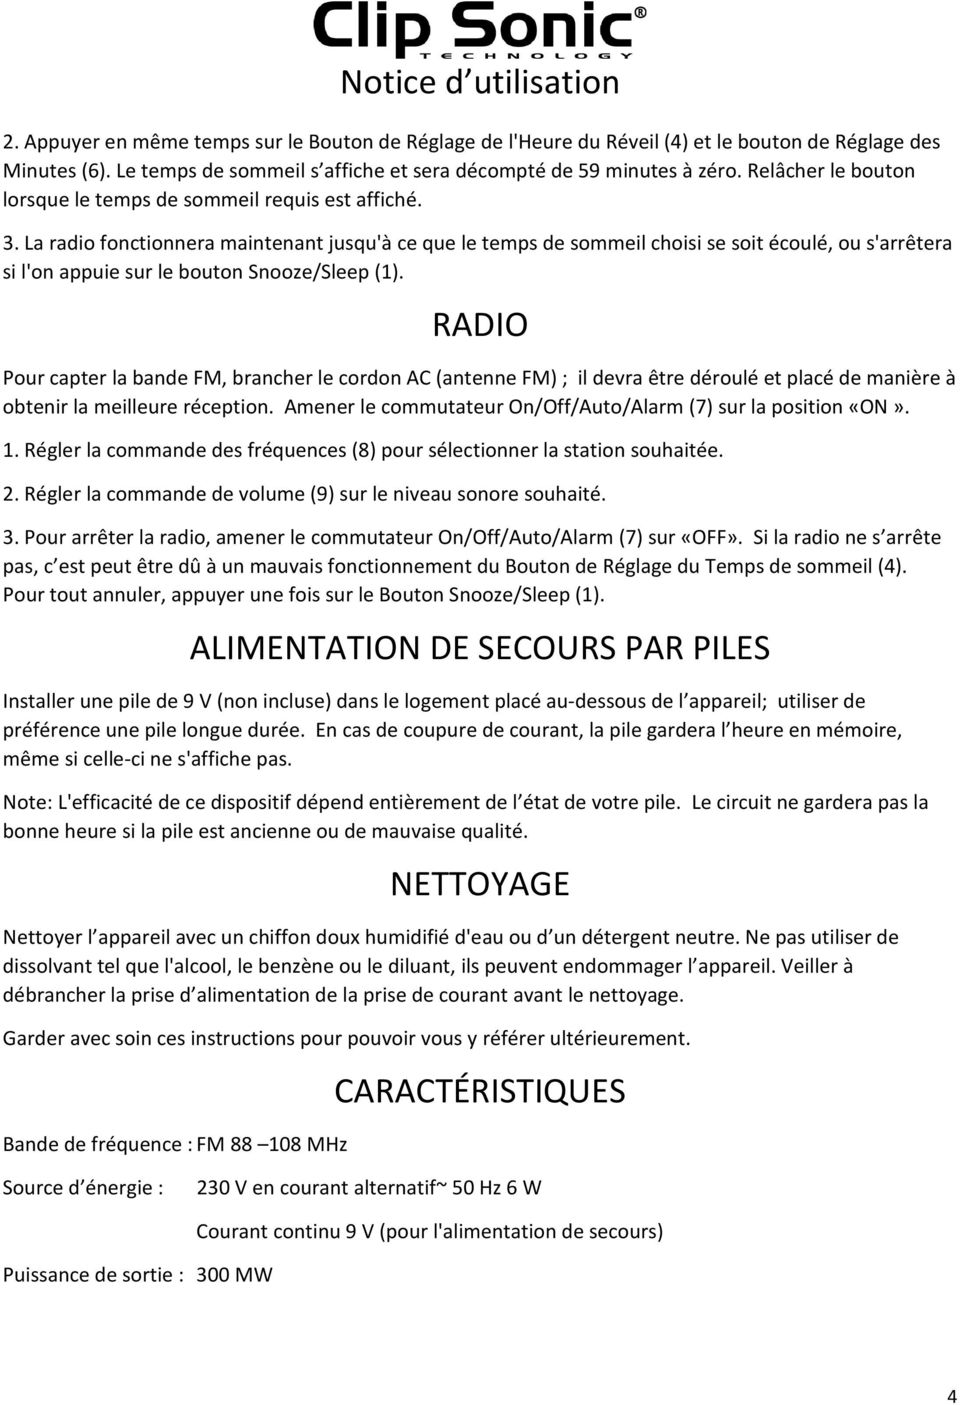 Notice d utilisation. Radio-réveil FM. Référence : AR283 Date : 04/02/14  Version : 1.3 Langue : Français - PDF Free Download